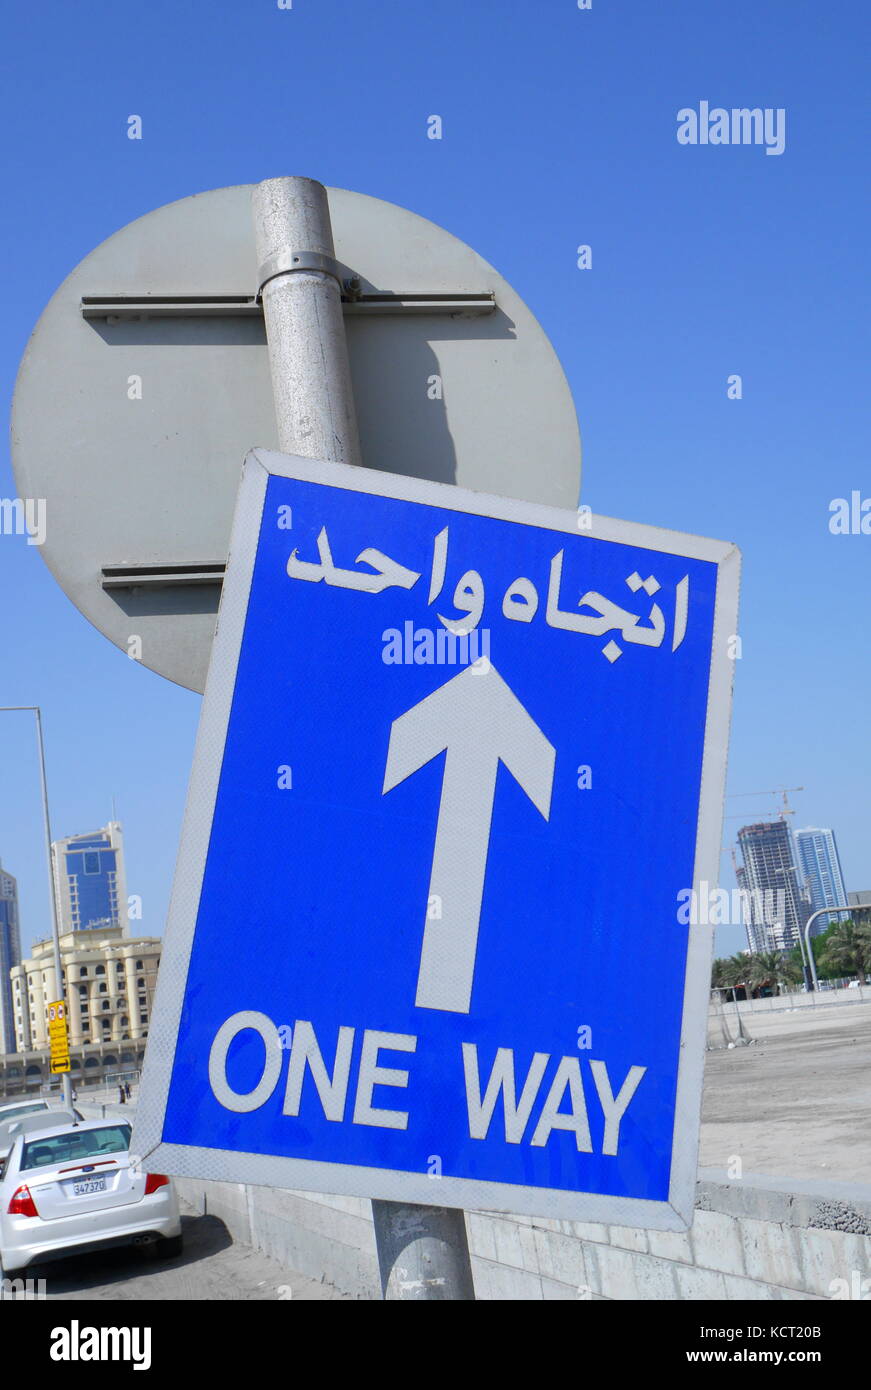 Une signalisation routière en arabe et français avec une flèche d'informer d'un mouvement.system, Manama, Royaume de Bahreïn Banque D'Images